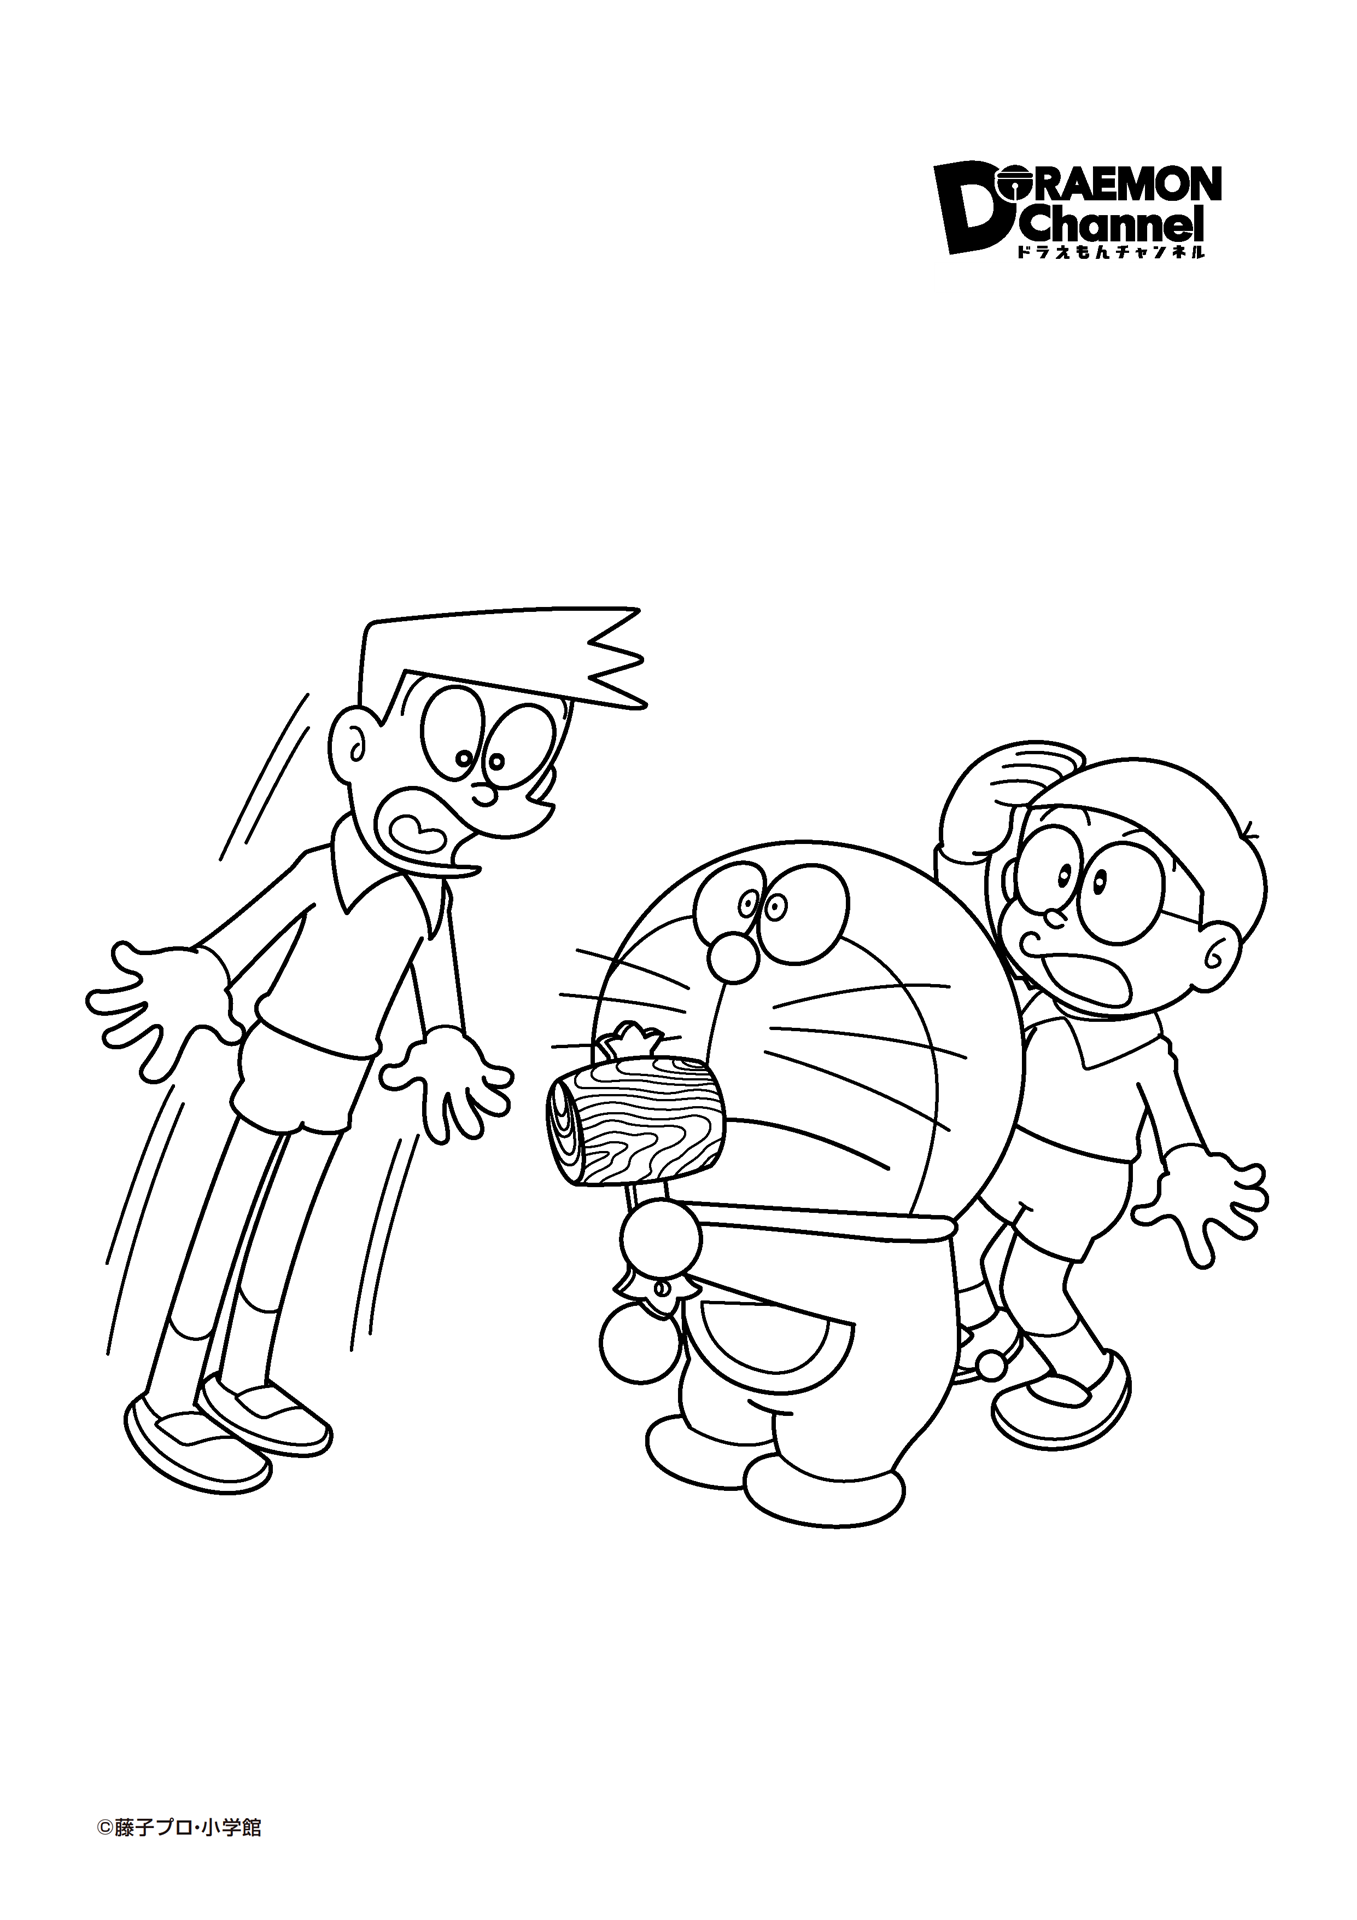 Tranh tô màu Doraemon, Nobita và Xeko